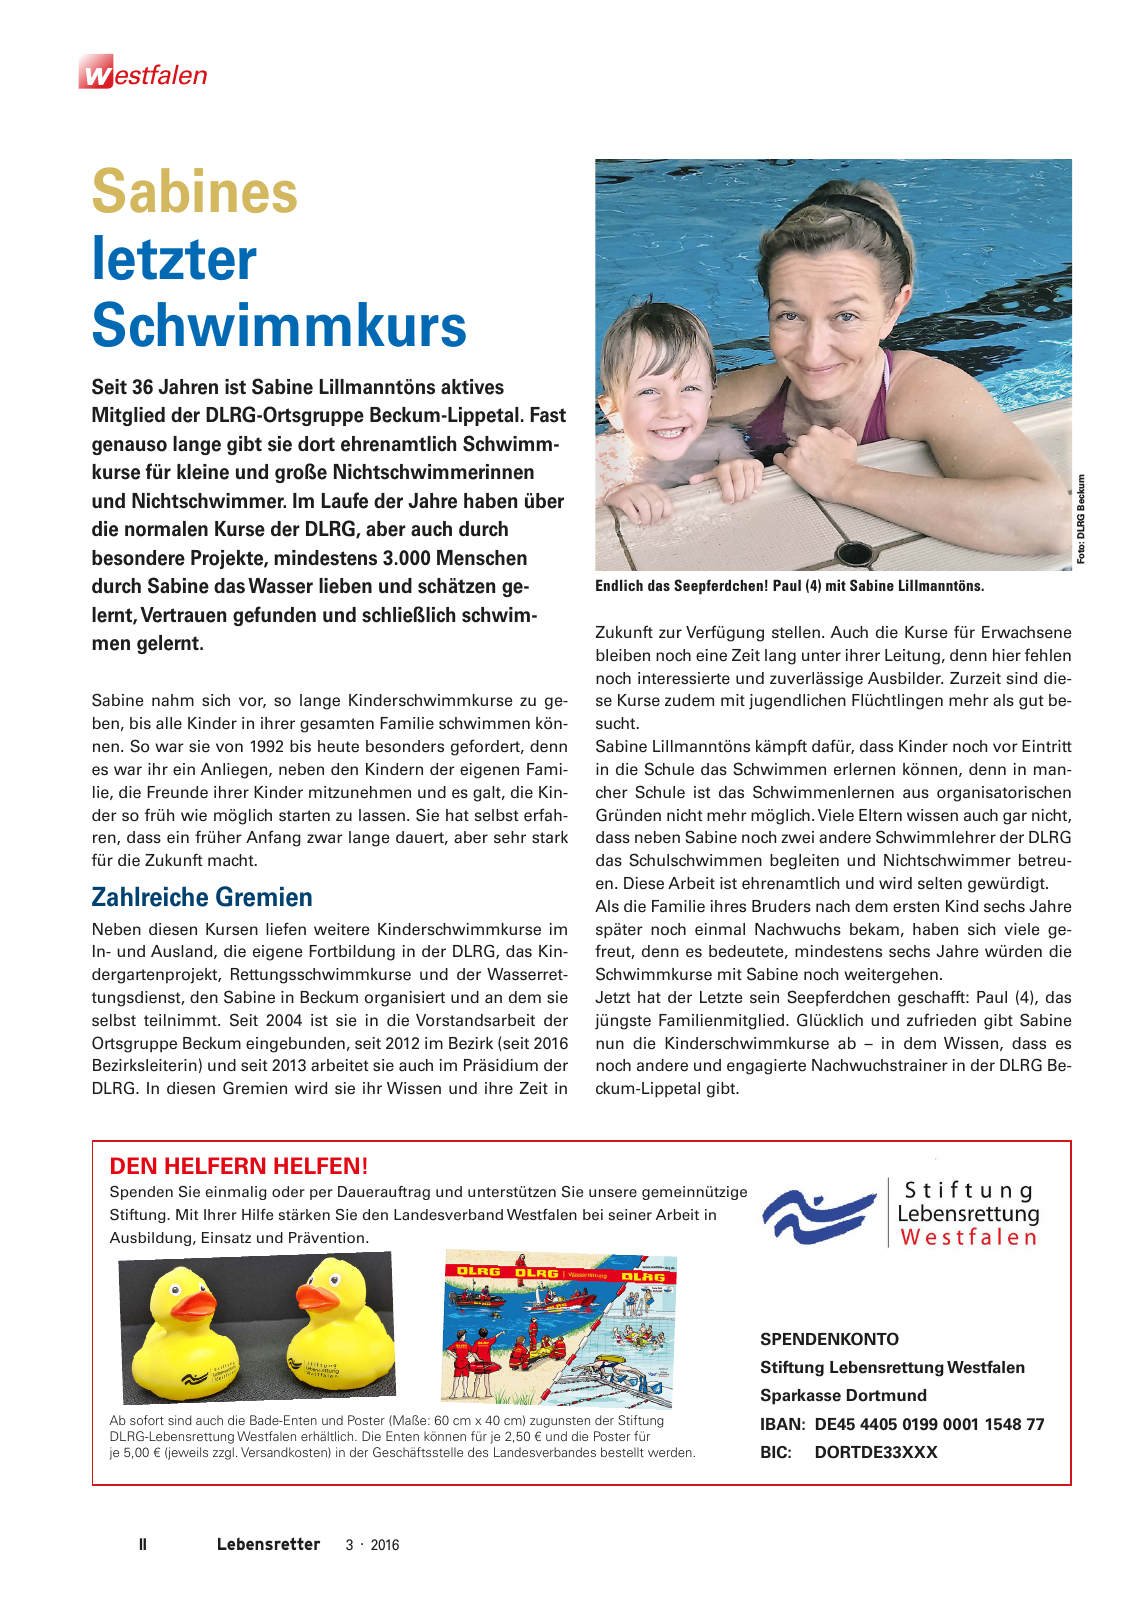 Vorschau Lebensretter 3/2016 - Regionalausgabe Westfalen Seite 4